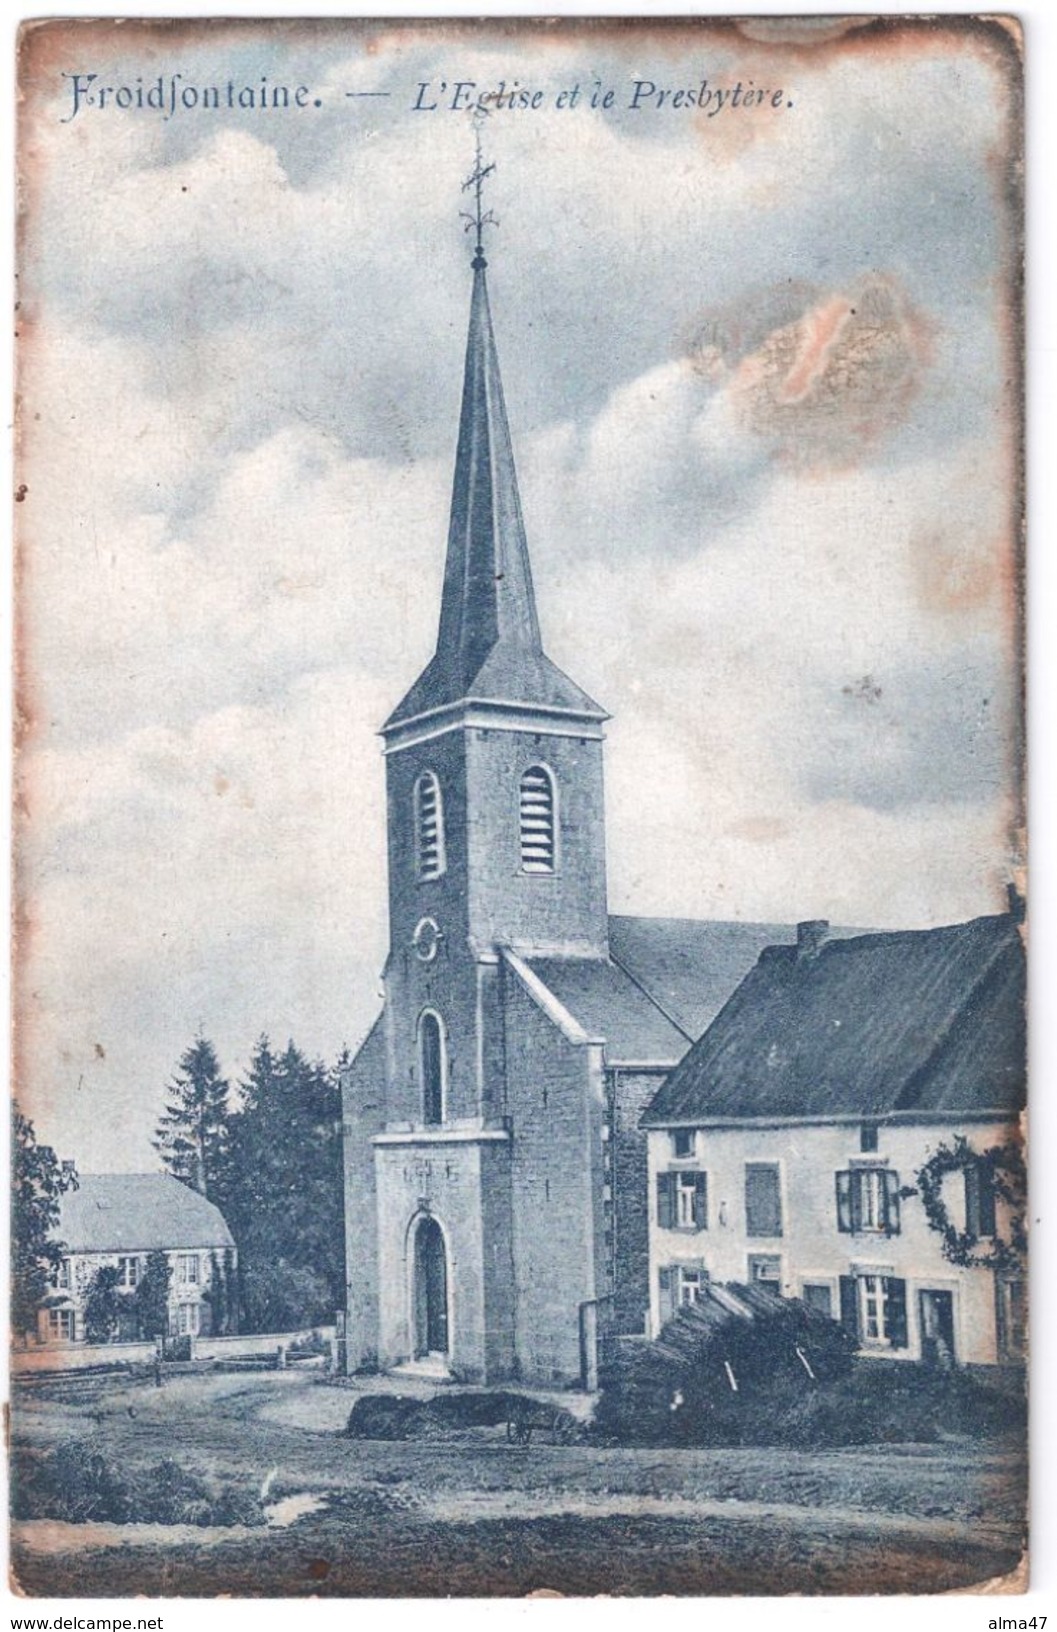 Froidfontaine (Vonêche) - Eglise, Presbytère Et Maison - Circulé 1907 - Carte Bleutée Rescapée Du Feu ! - Beauraing